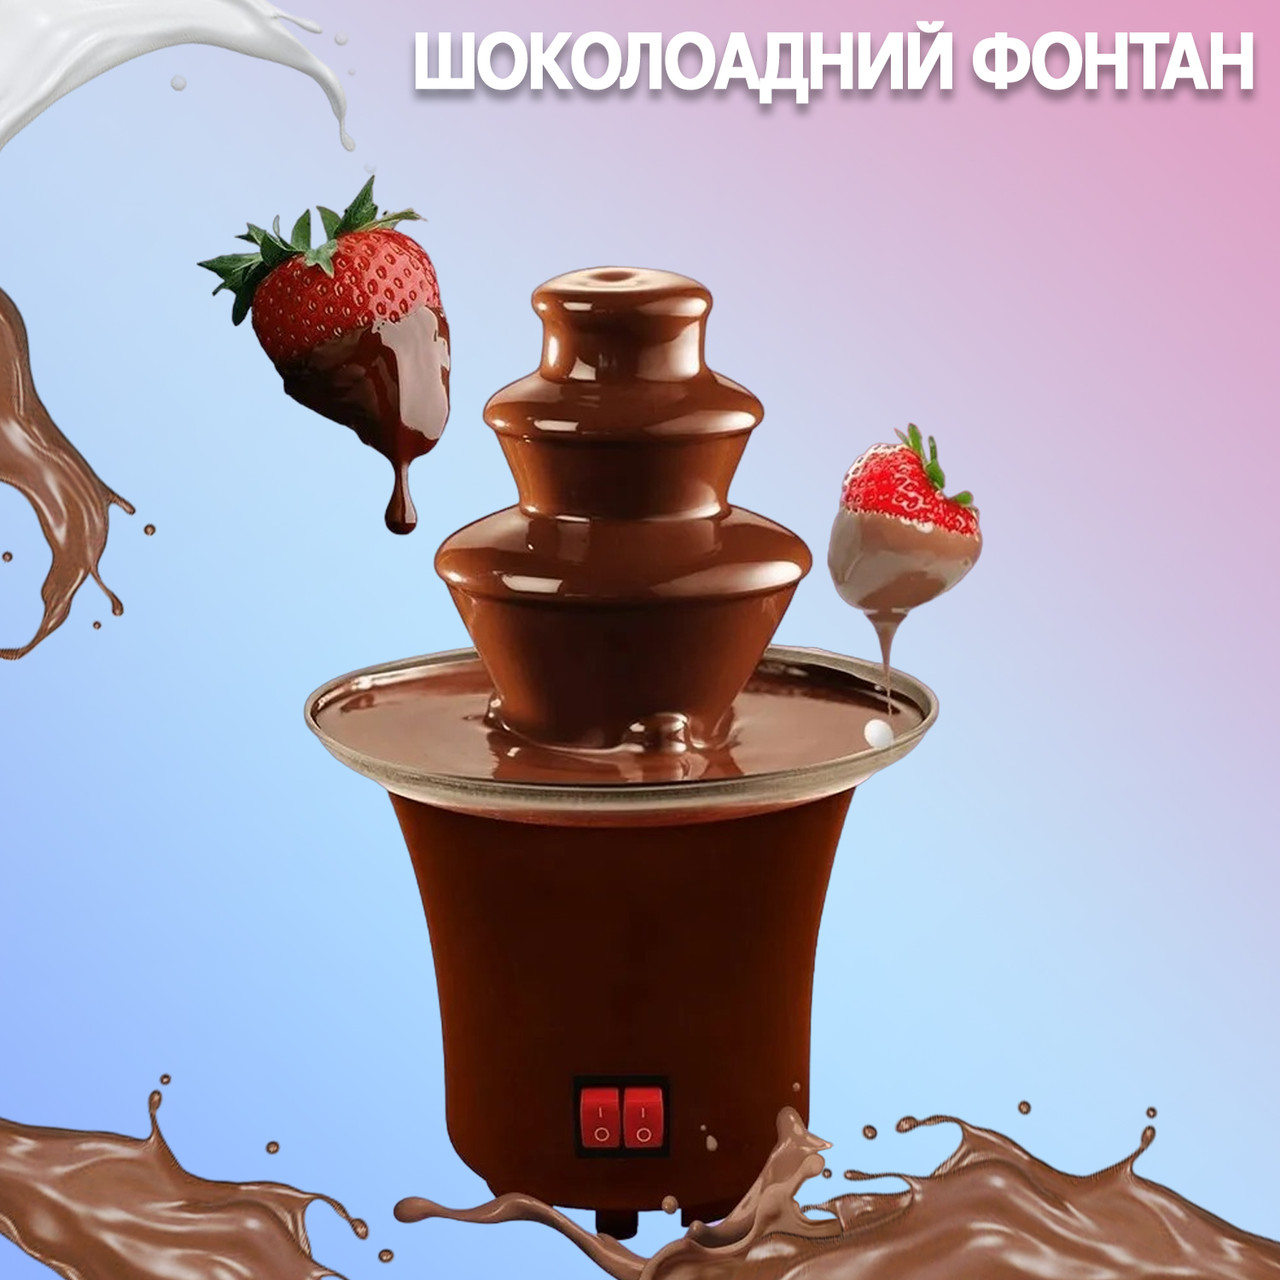 Шоколадний фонтан A-Plus Chocolate Fountain C22 см для автоматичного плавлення шоколаду CHS